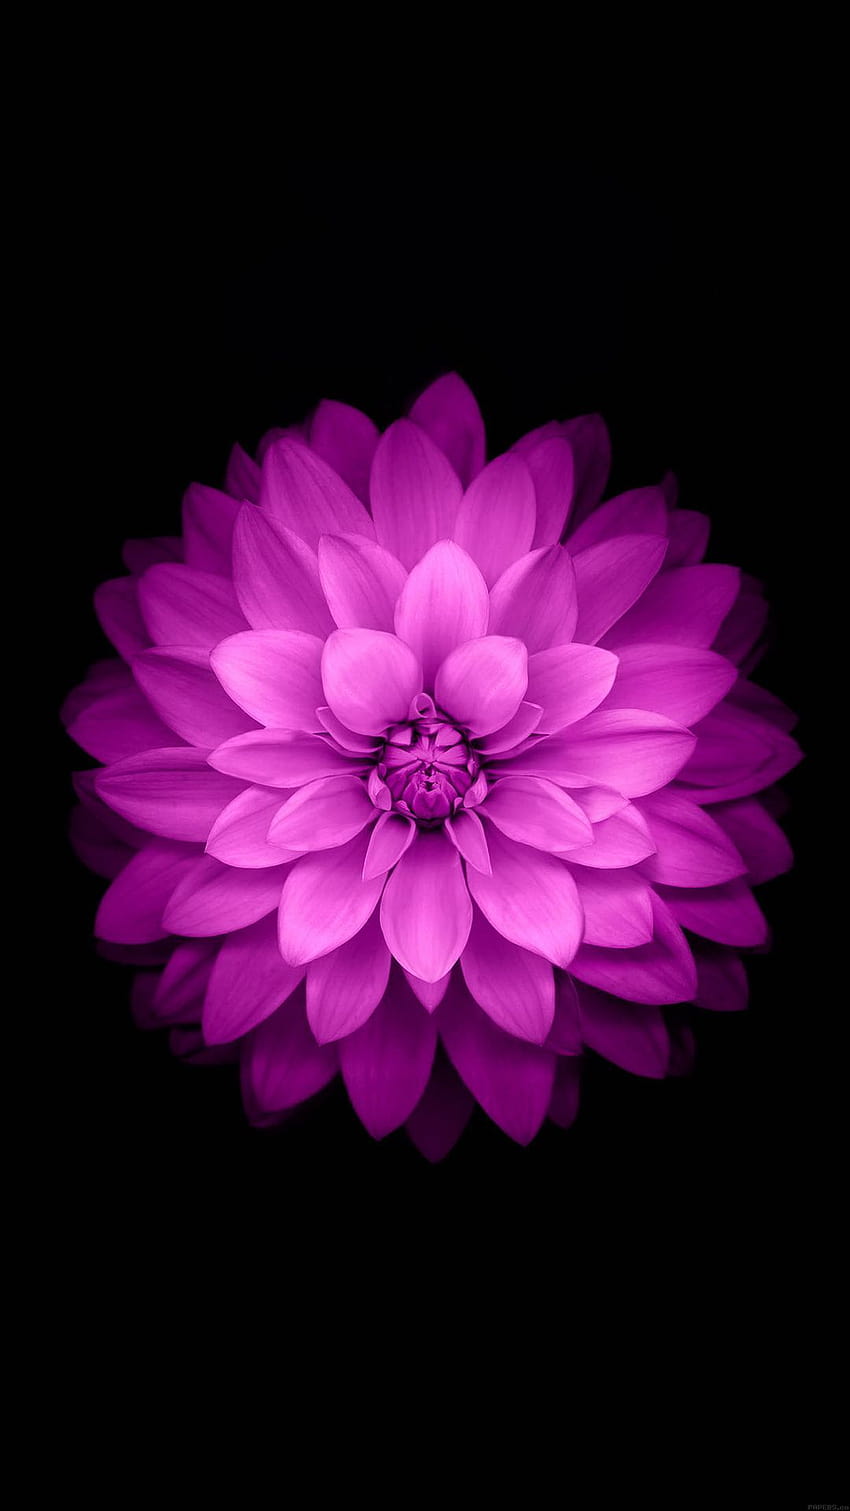 s negros de loto púrpura, flor amoled de alta resolución fondo de pantalla del teléfono